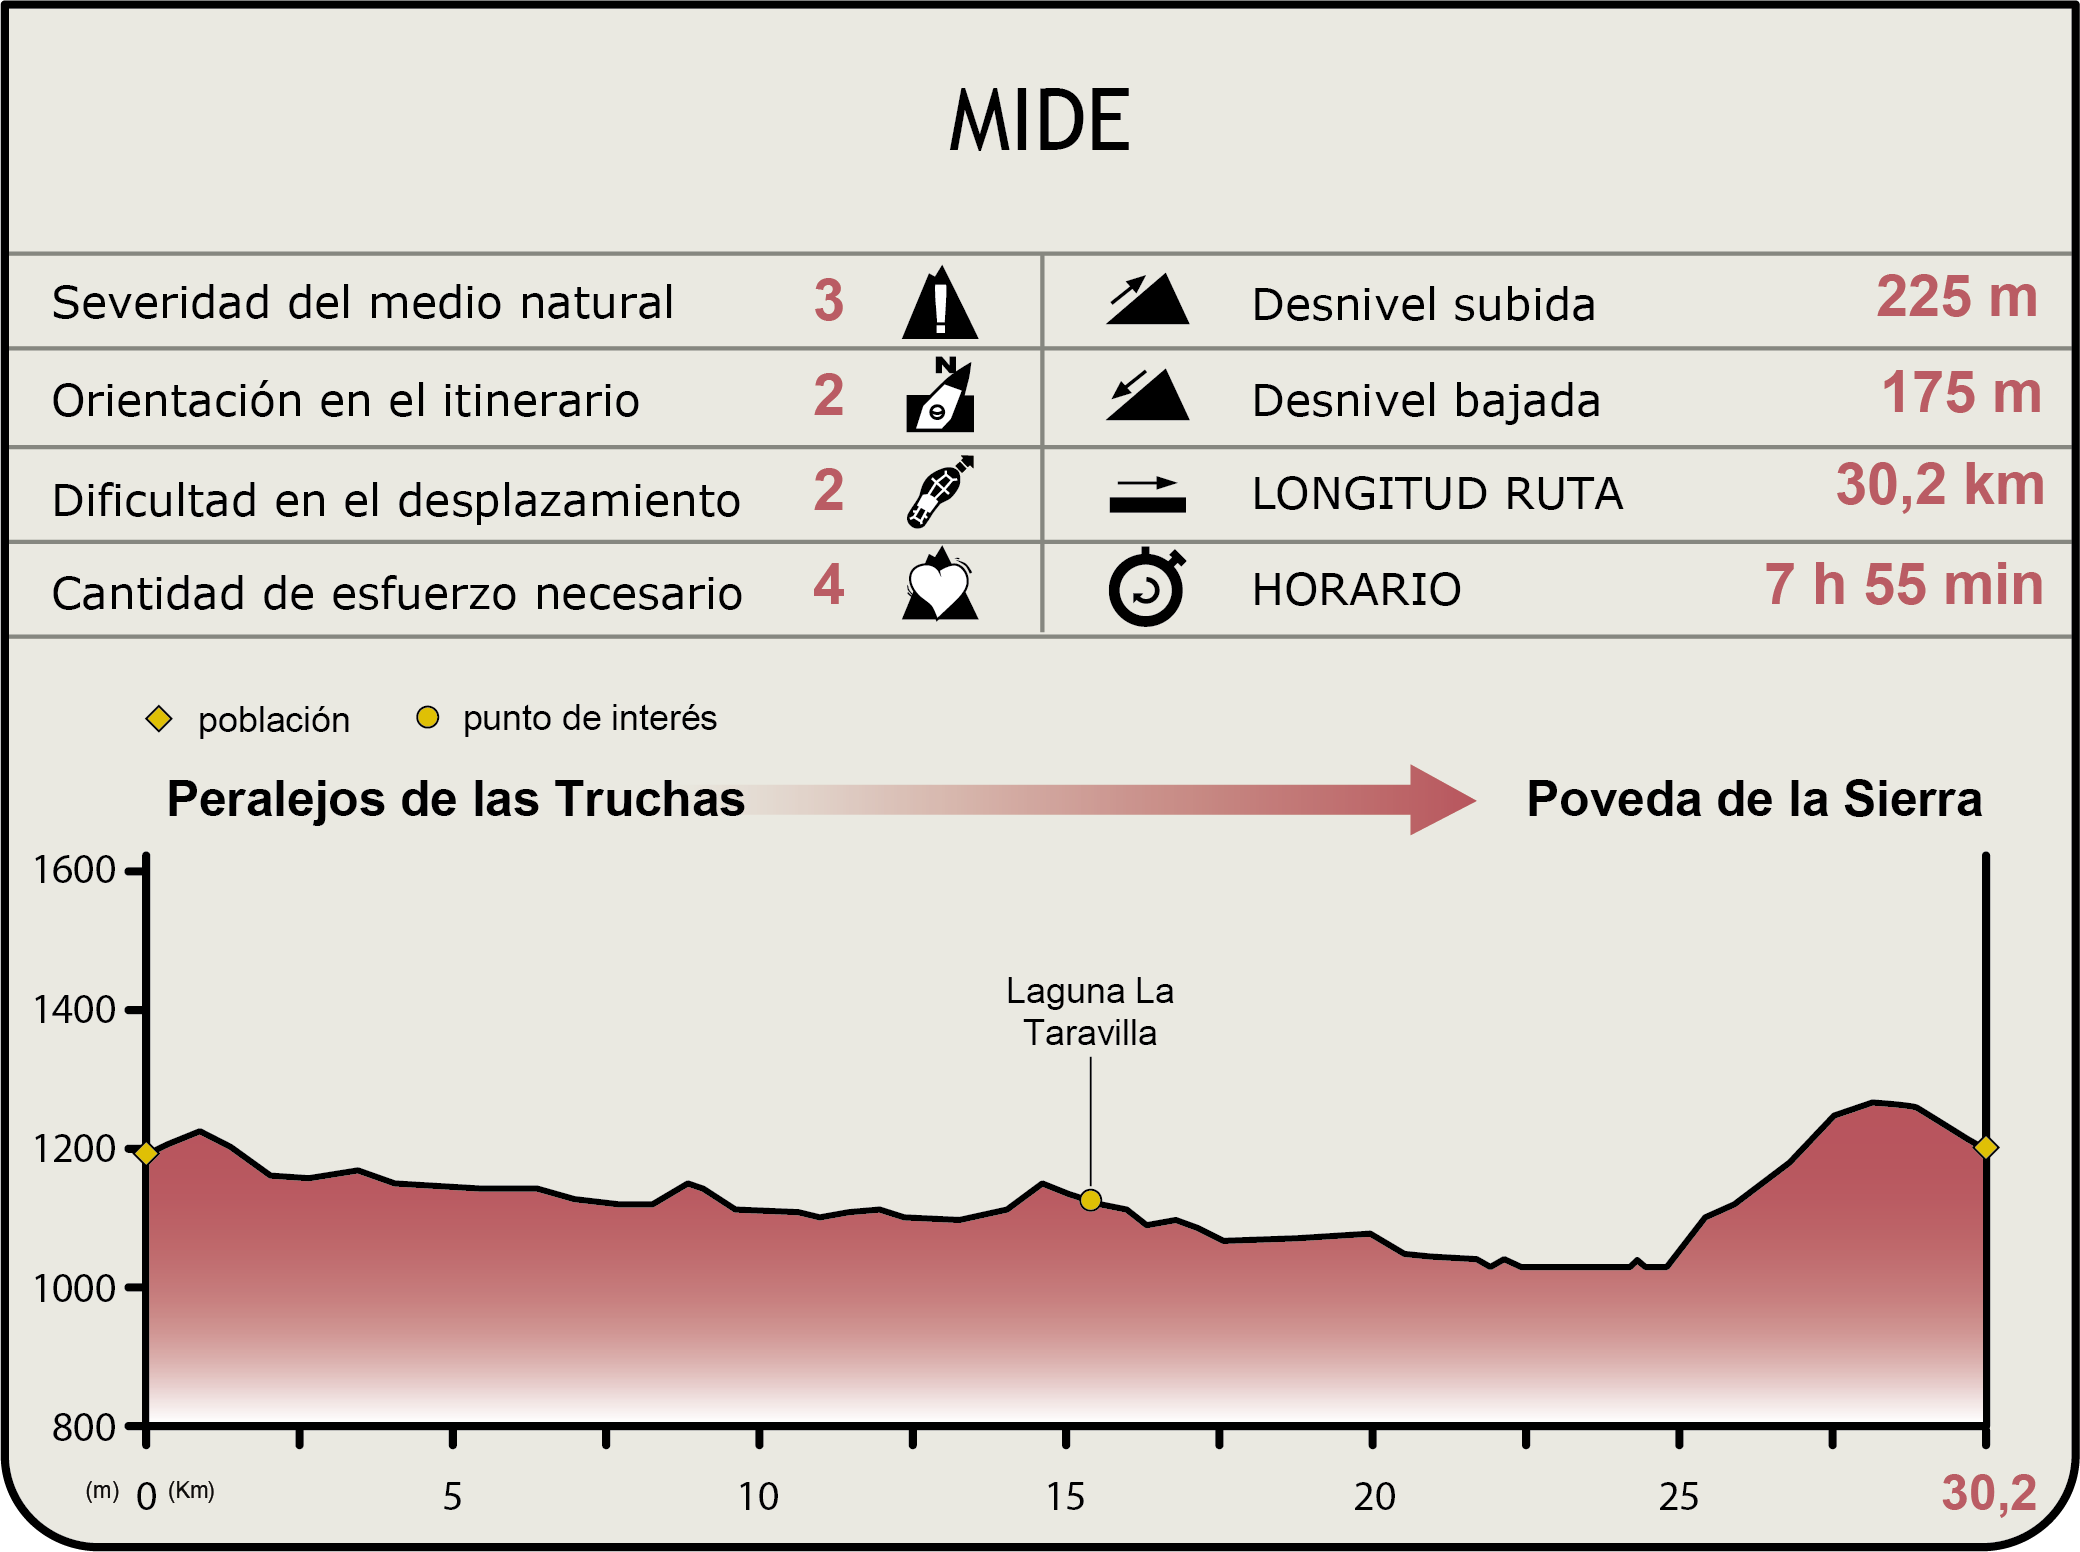 Perfil MIDE de la Etapa Peralejos de las Truchas-Poveda de la Sierra